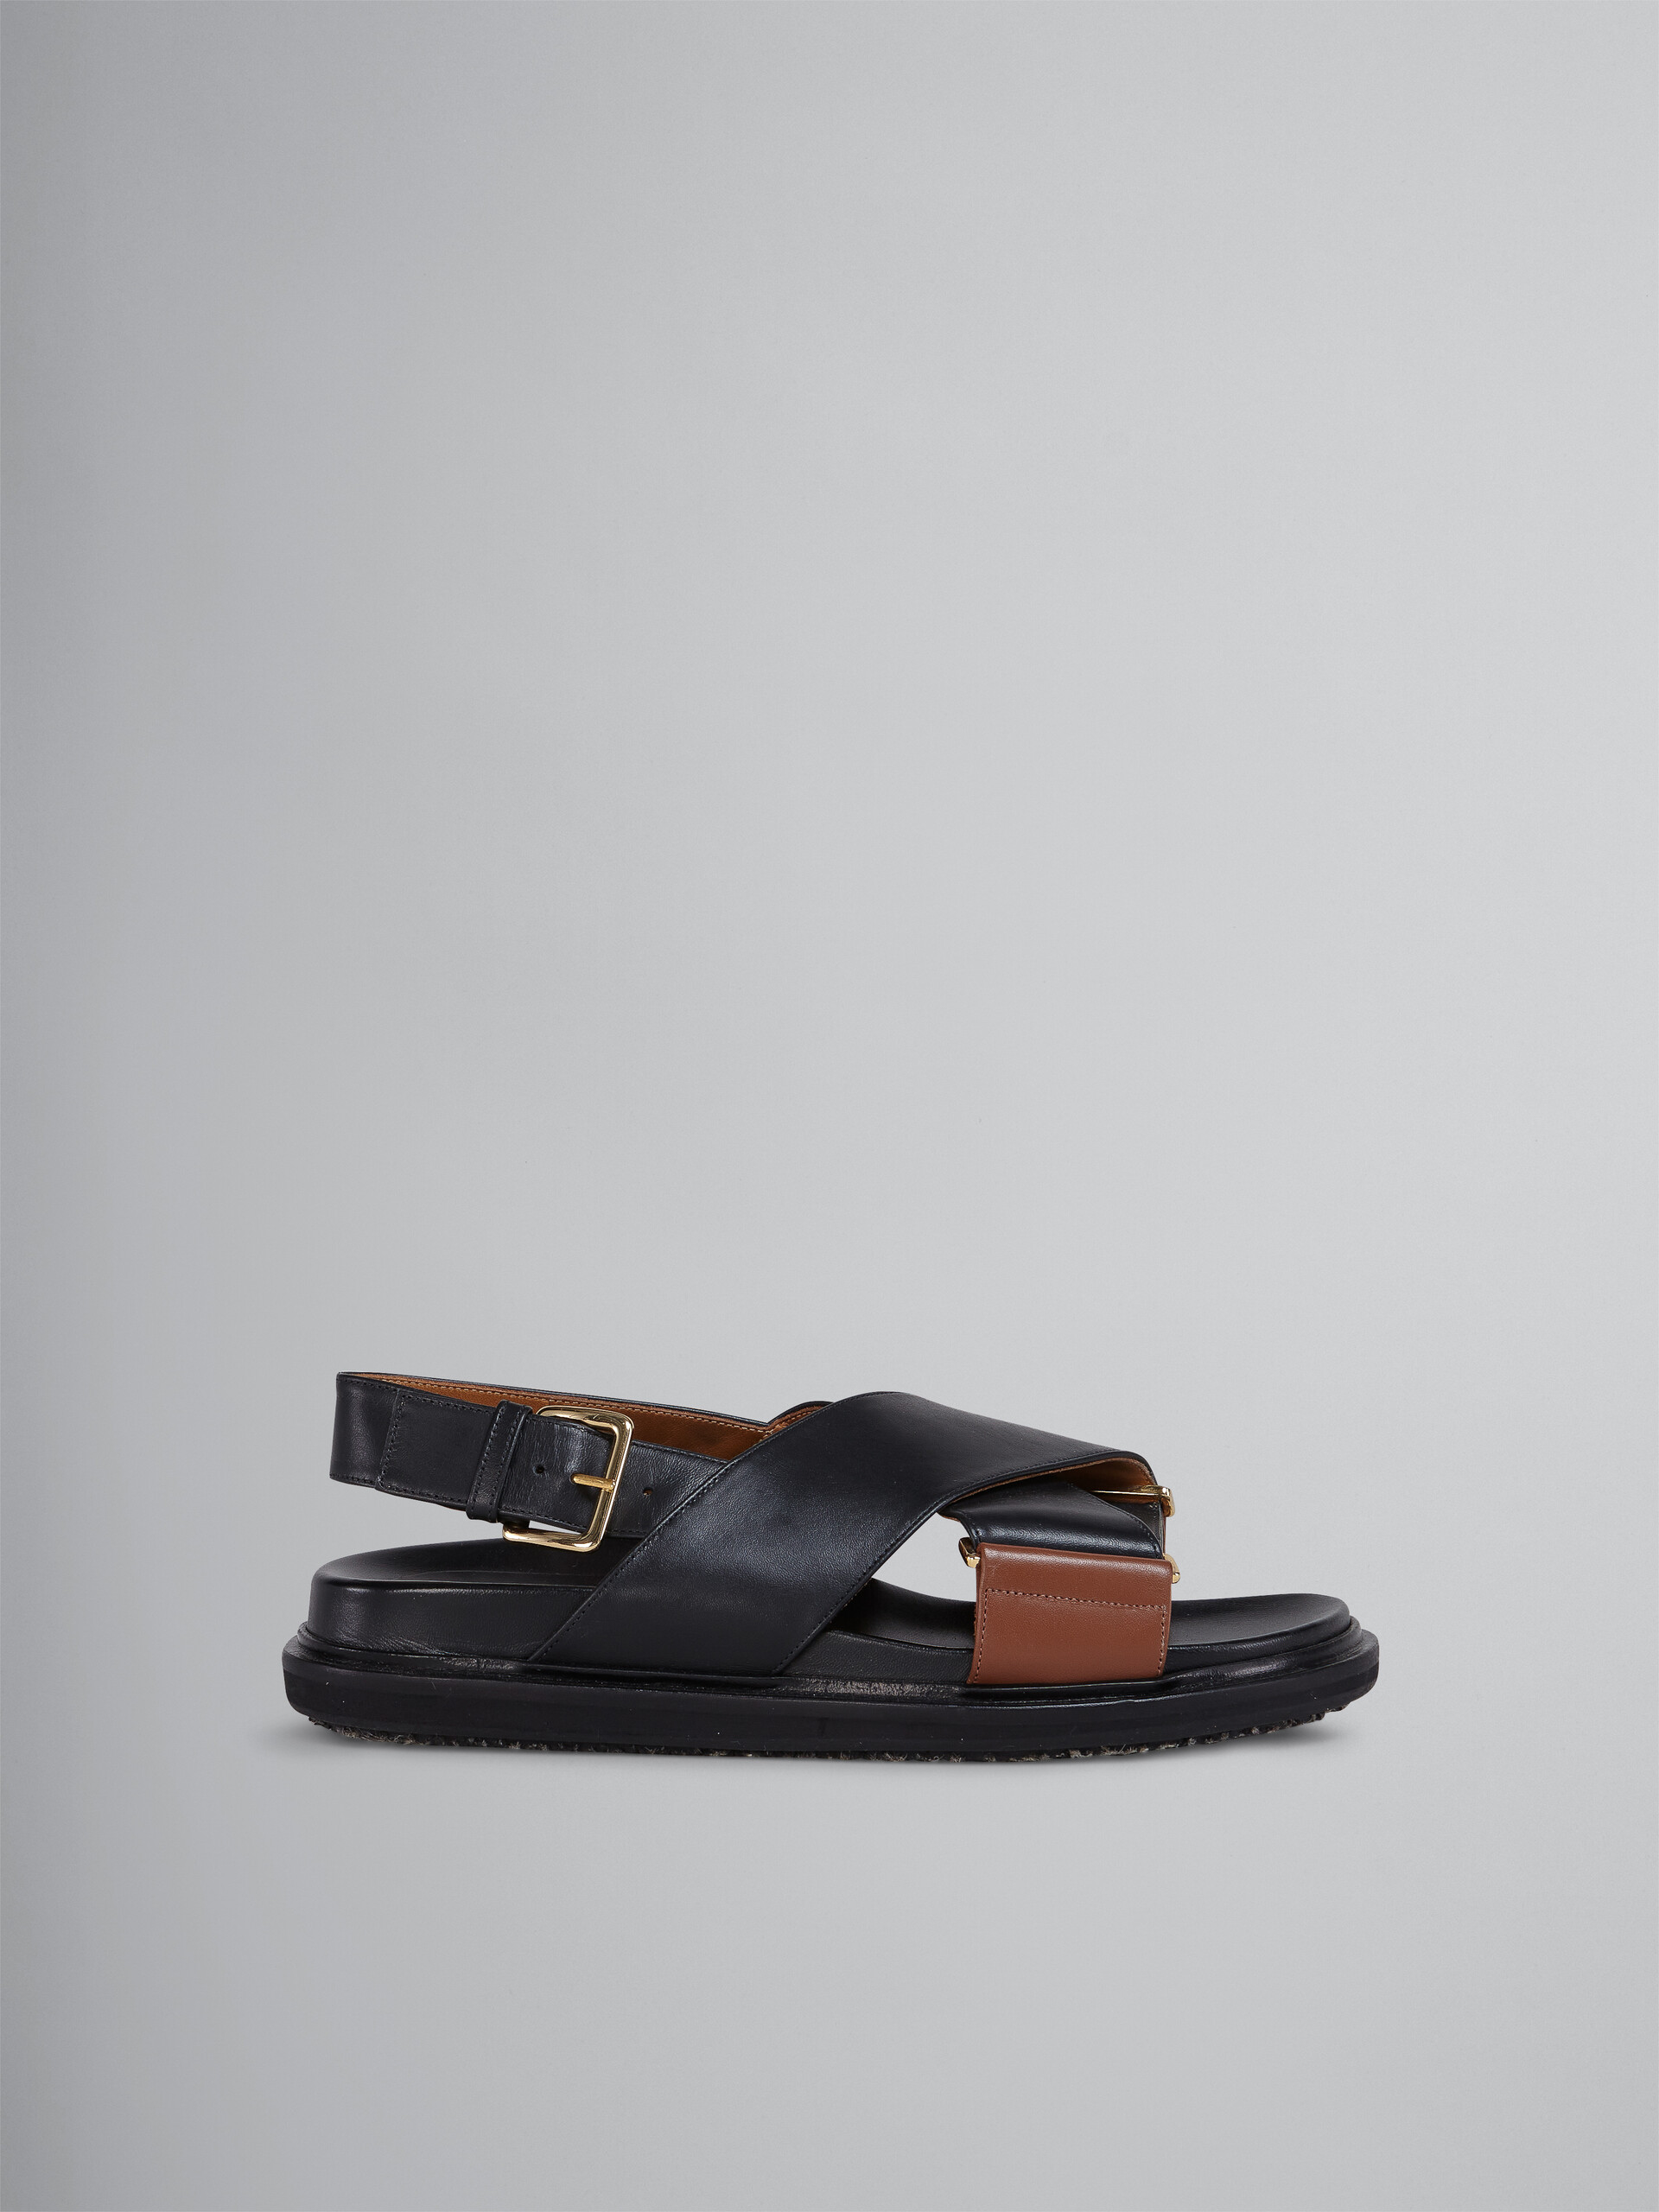 Sandales fussbett en cuir noir et marron - Sandales - Image 1